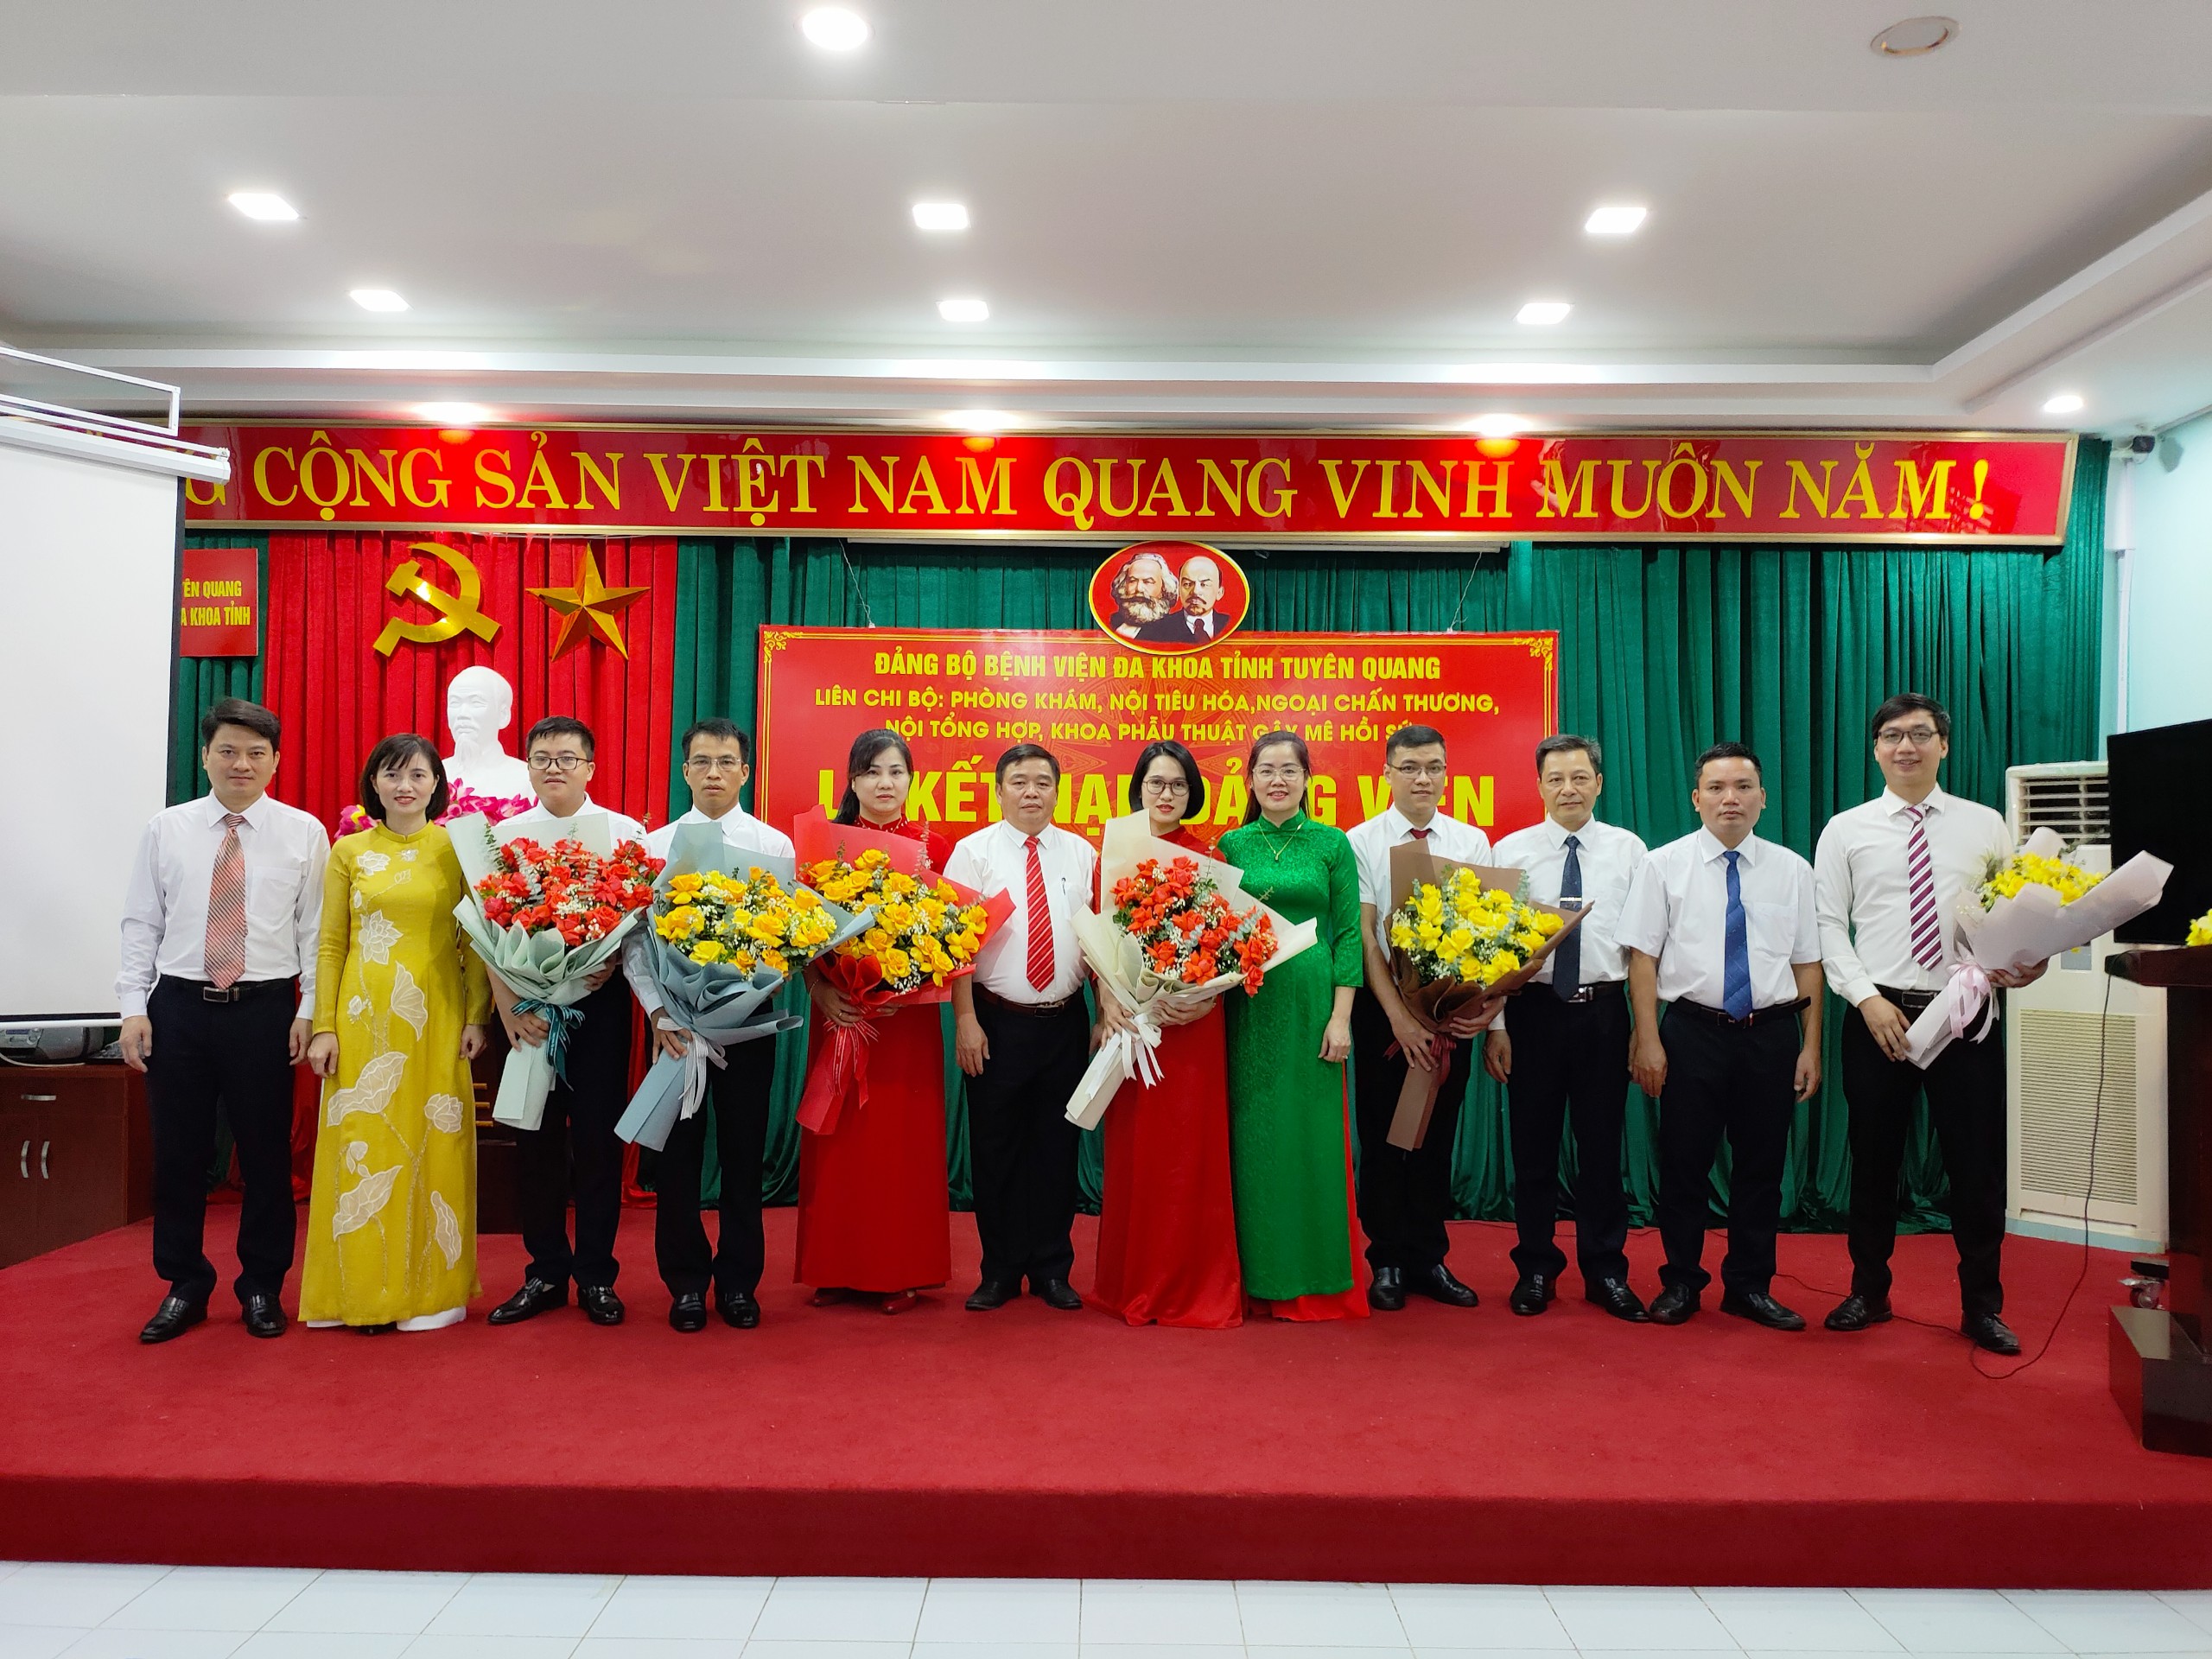 Đảng bộ Bệnh viện đa khoa tỉnh Tuyên Quang kết nạp thêm 6 Đảng viên mới